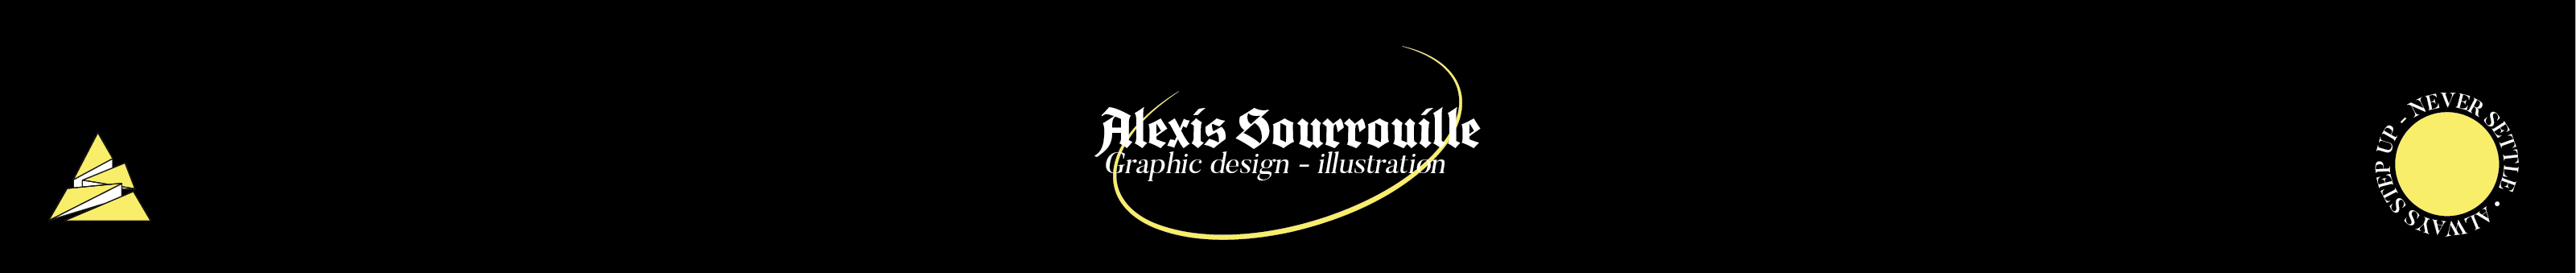 Alexis Sourrouille's profile banner